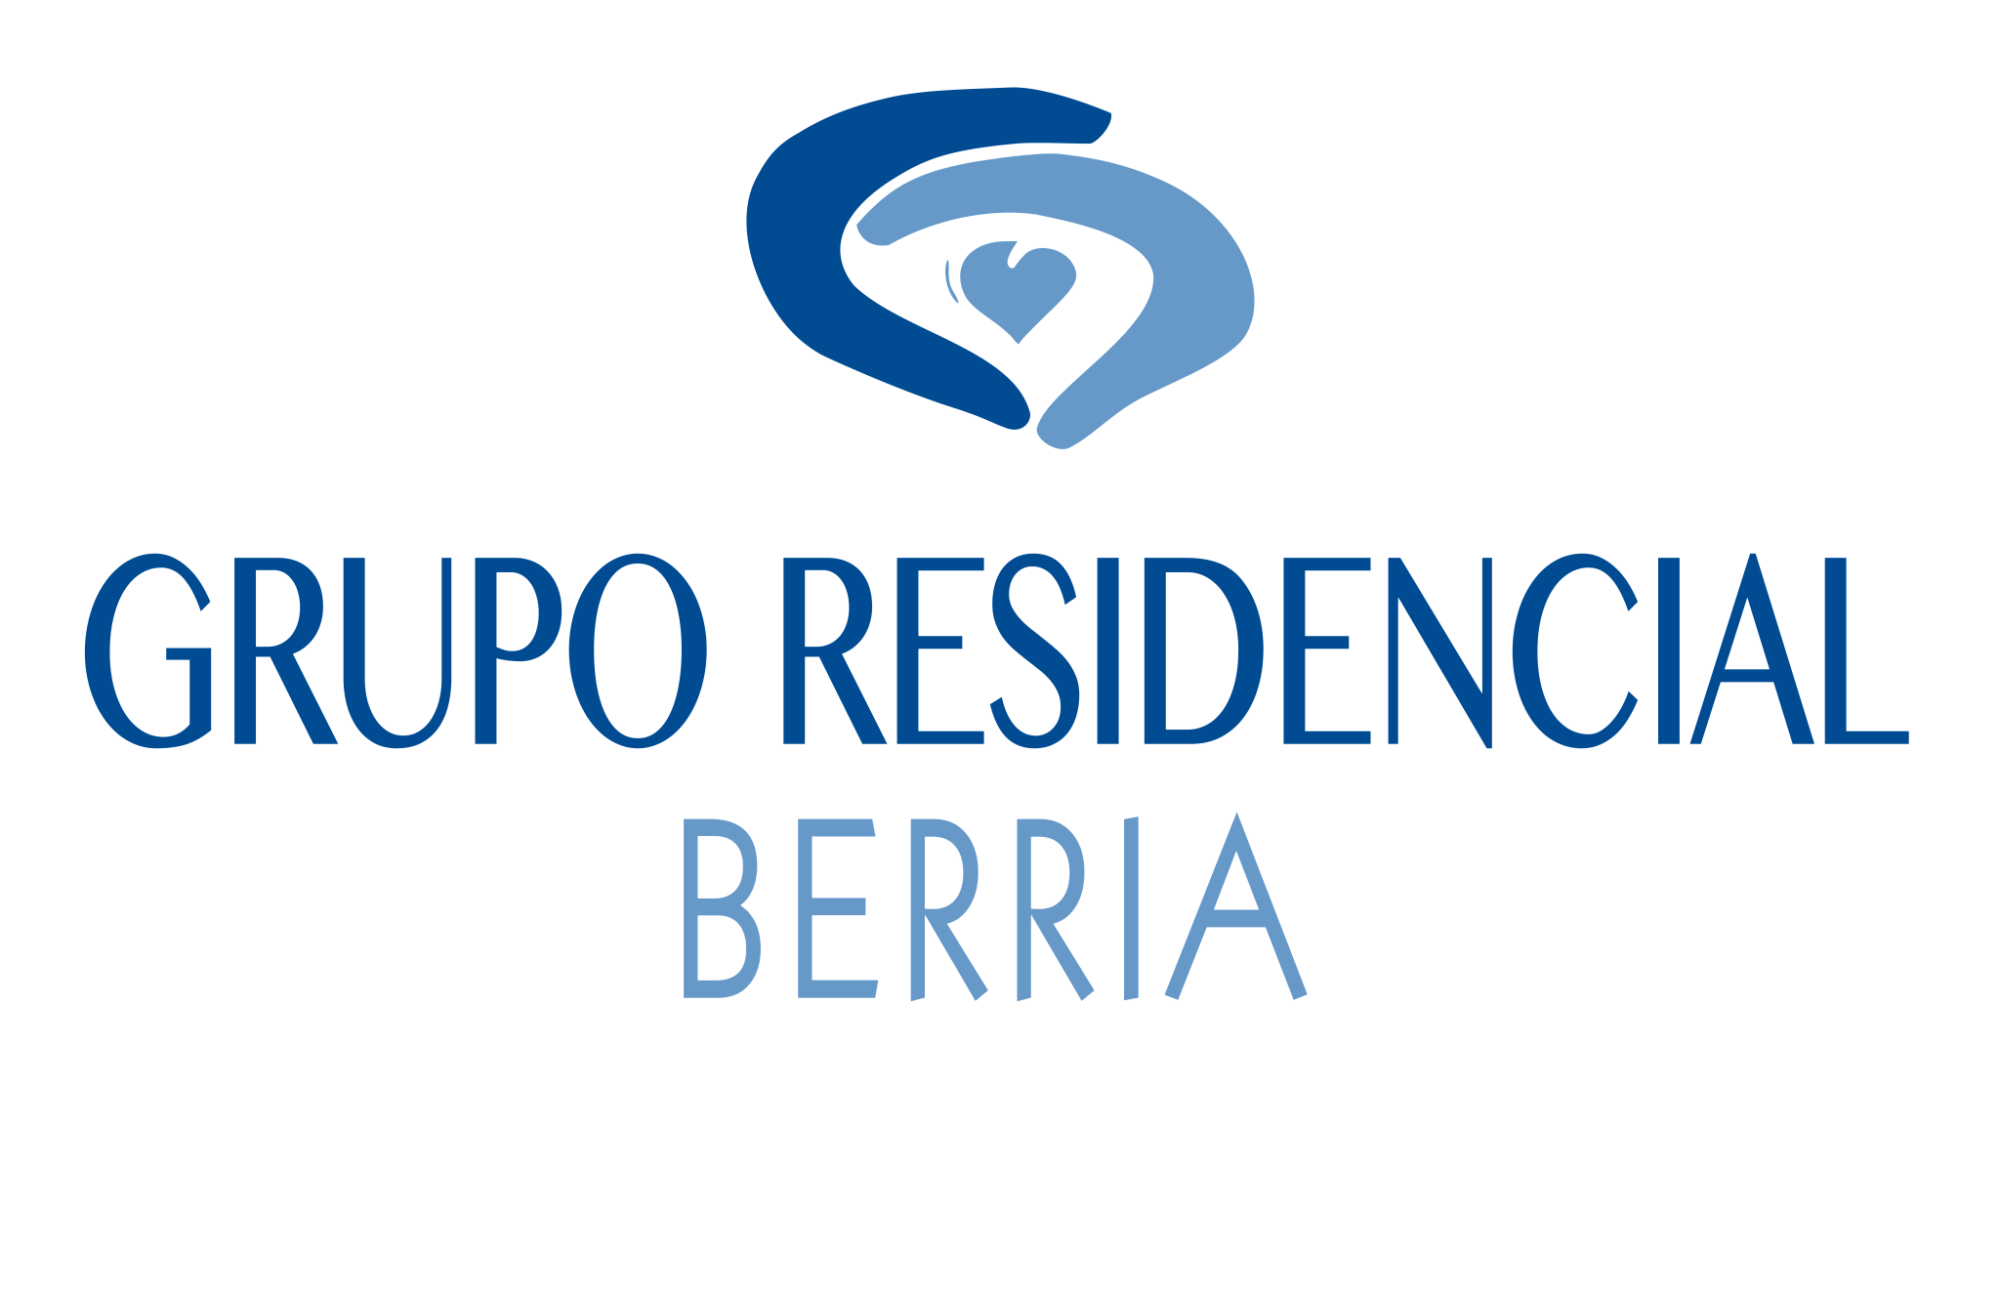 Grupo Residencial Berria.